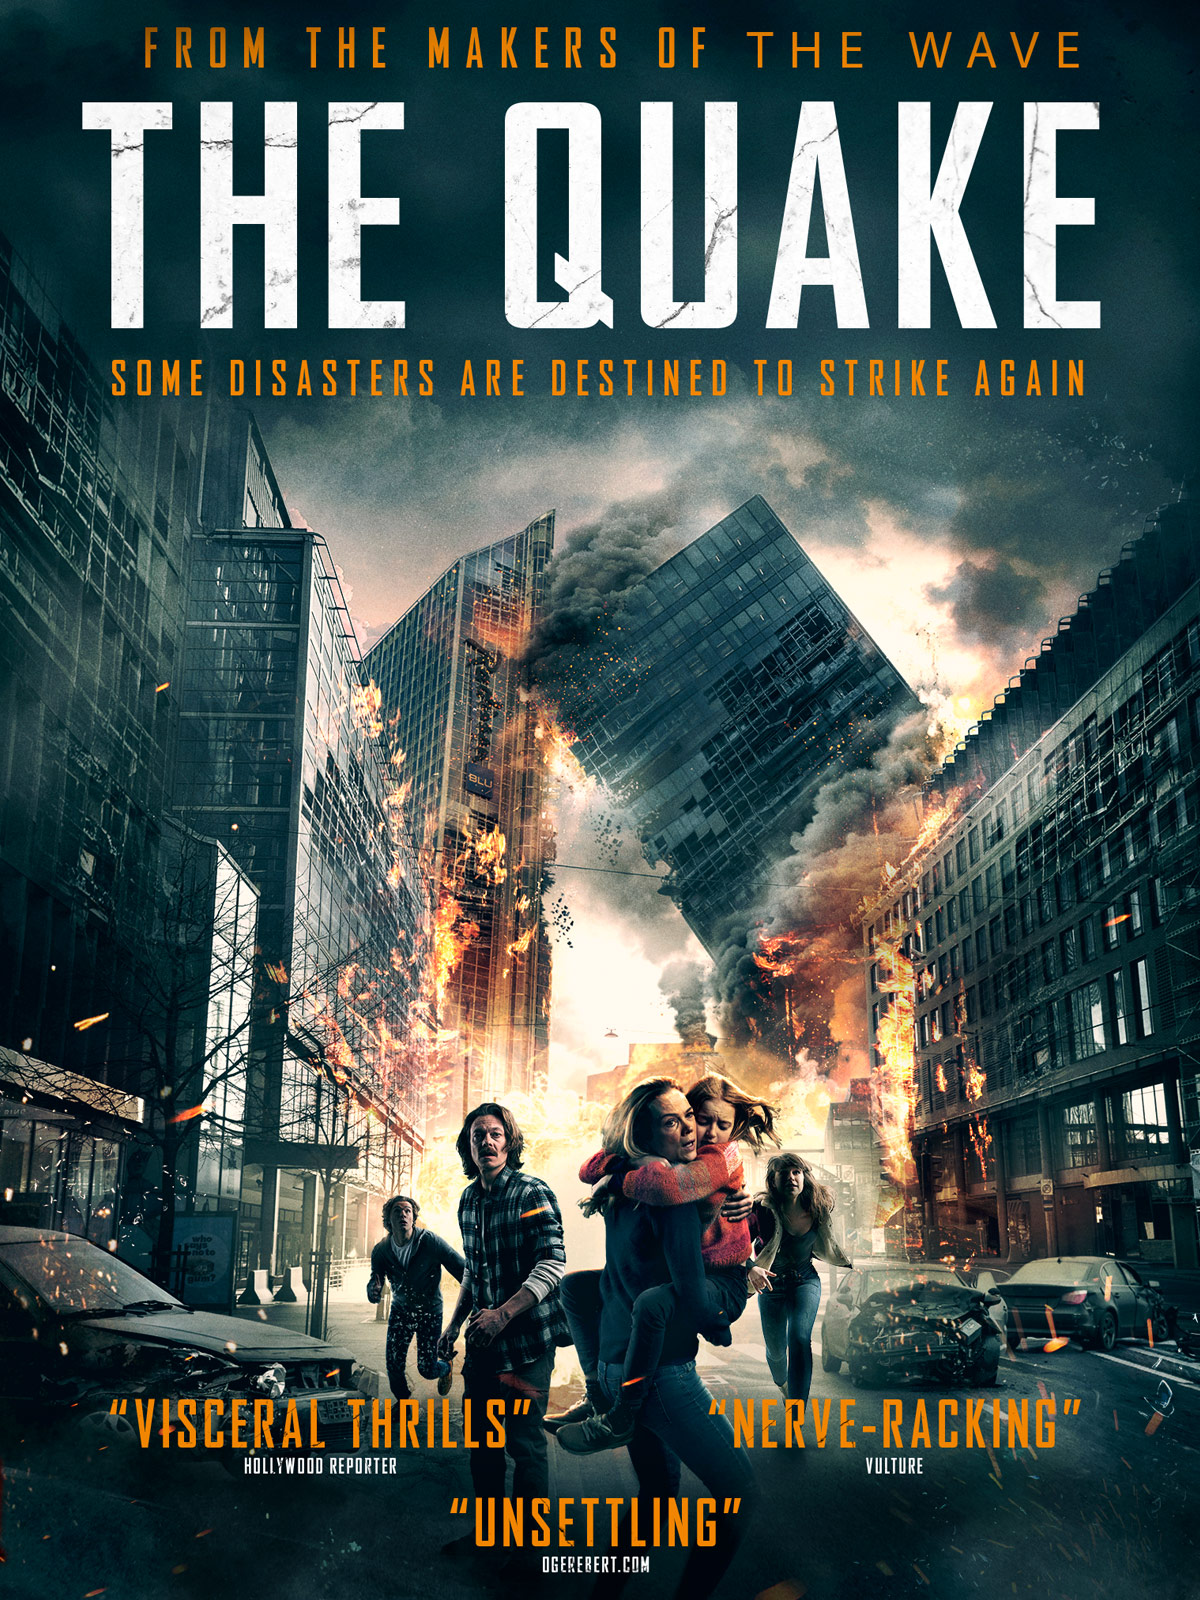 the quake movie review